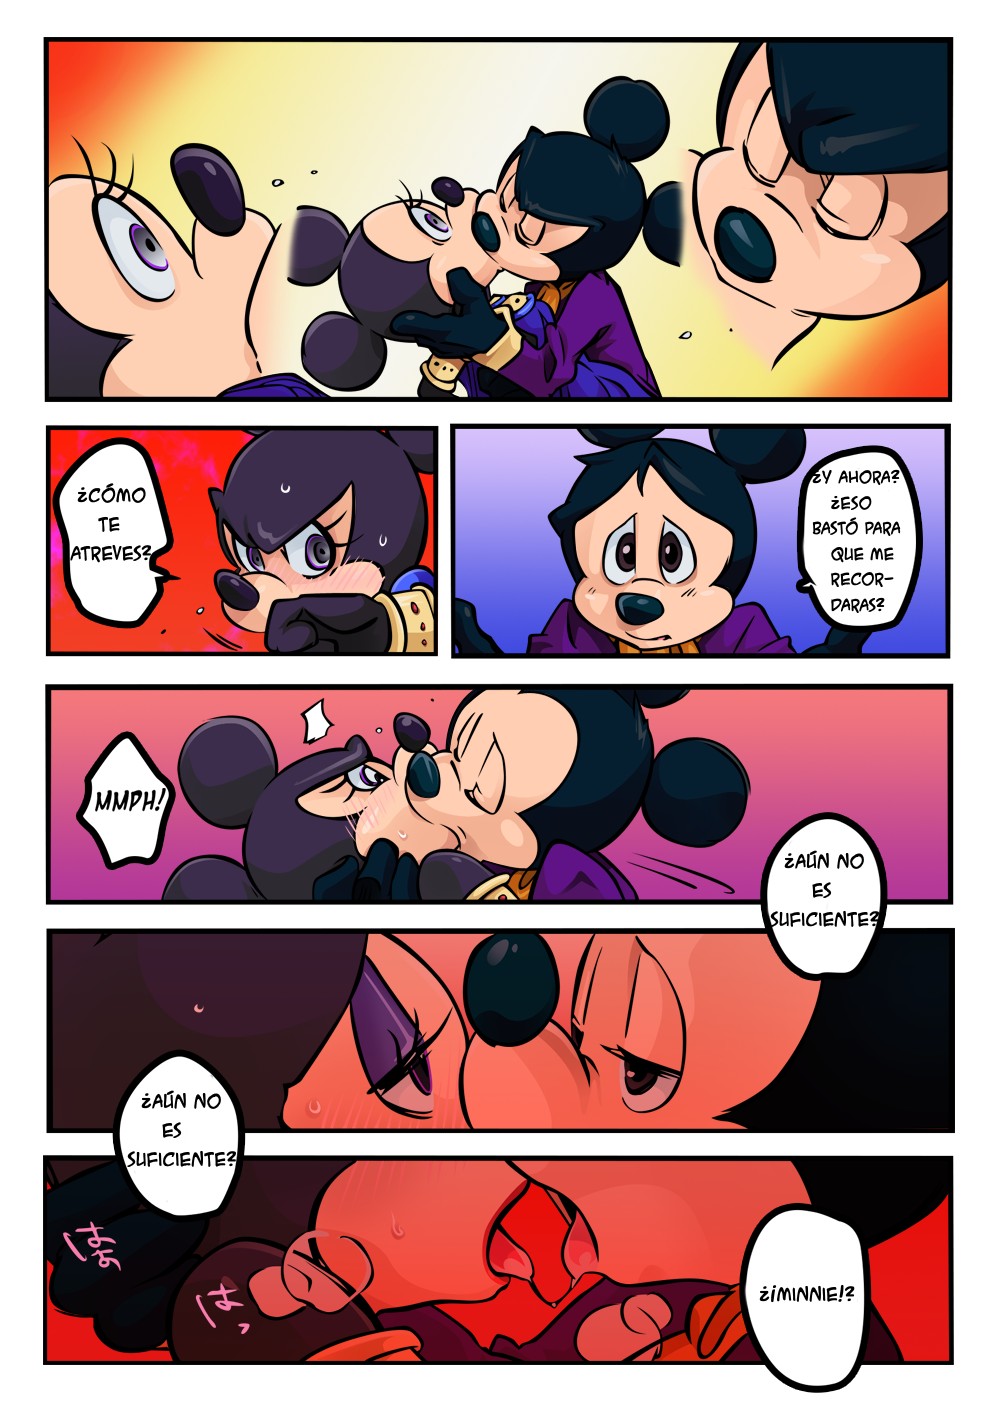 Disney cartoon porno fumetto